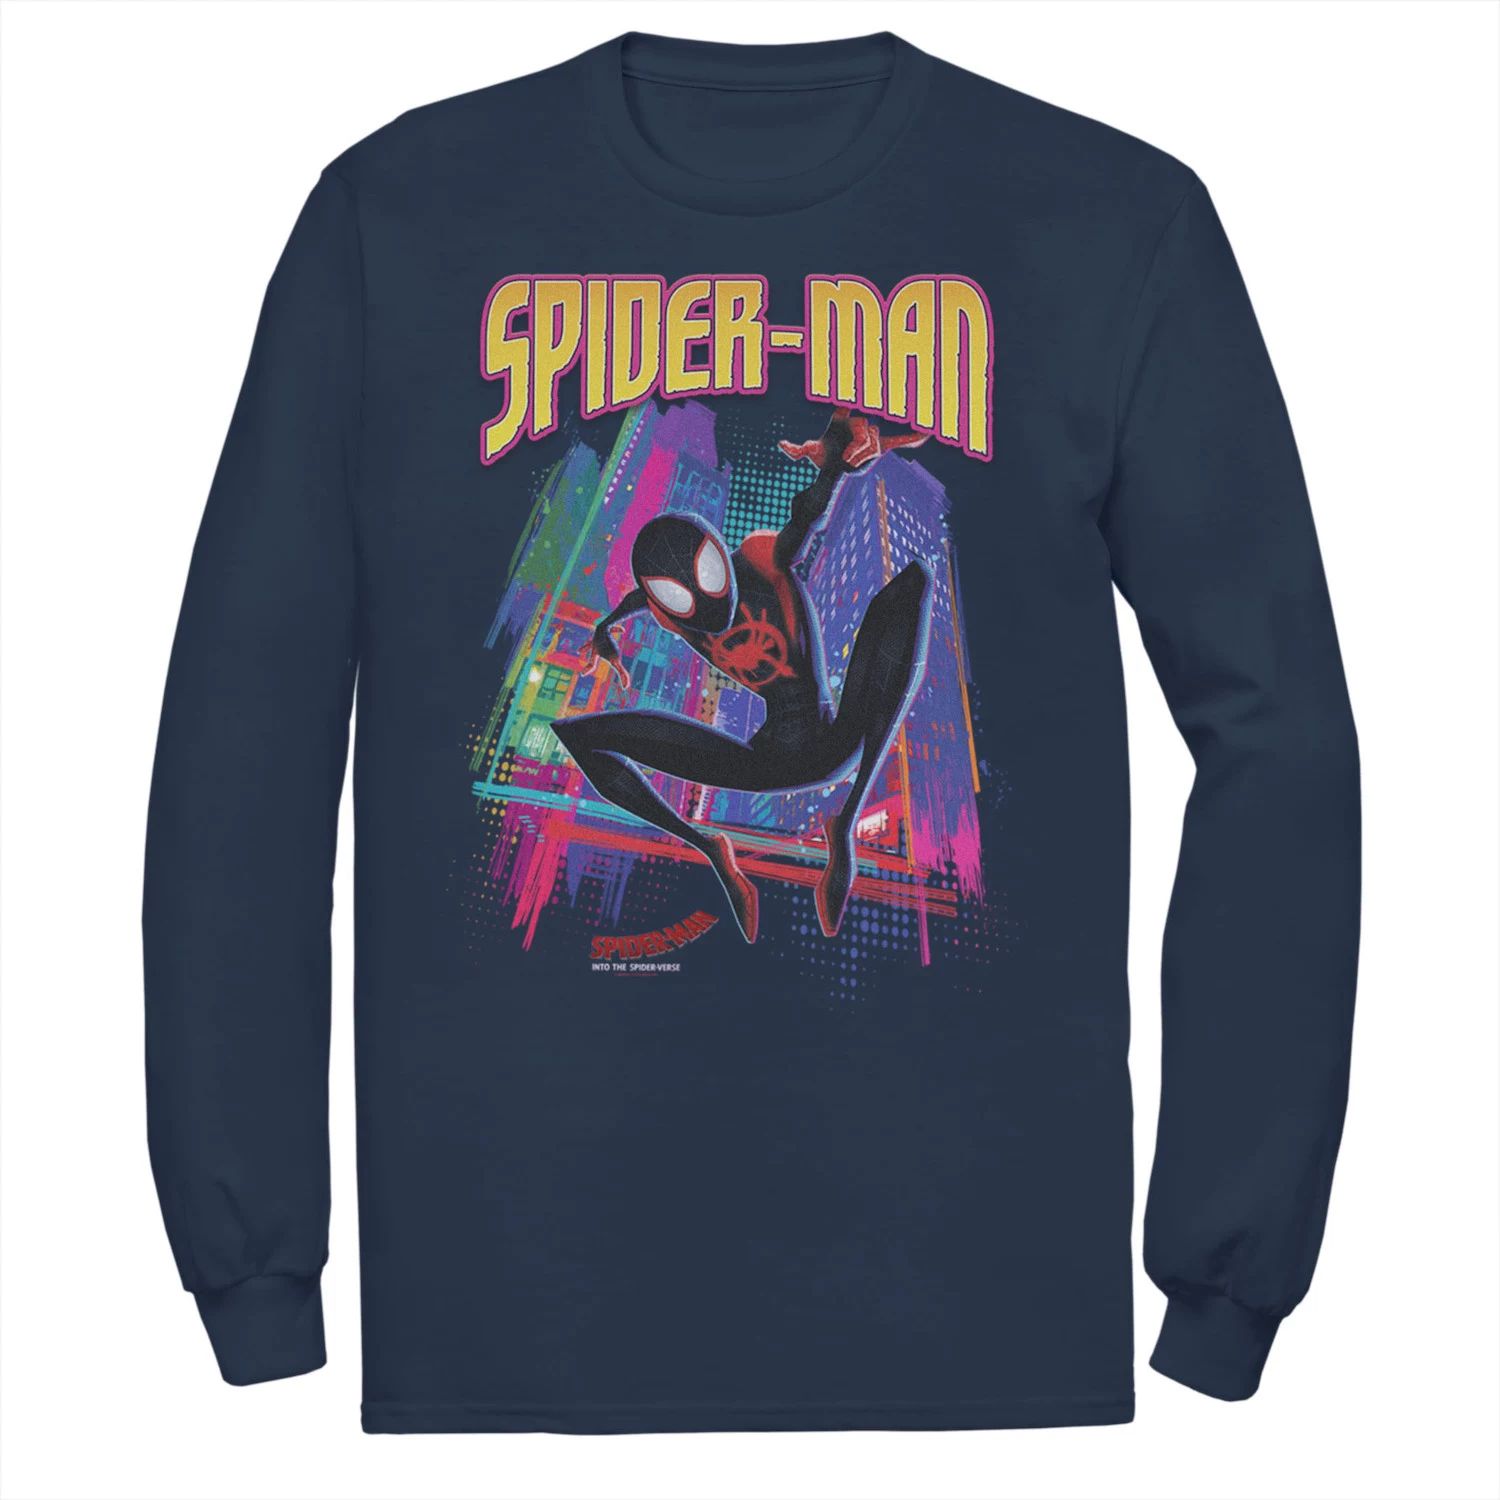 Мужская футболка Marvel Into The Spider-Verse Neon Skyline мужская майка marvel into the spider verse